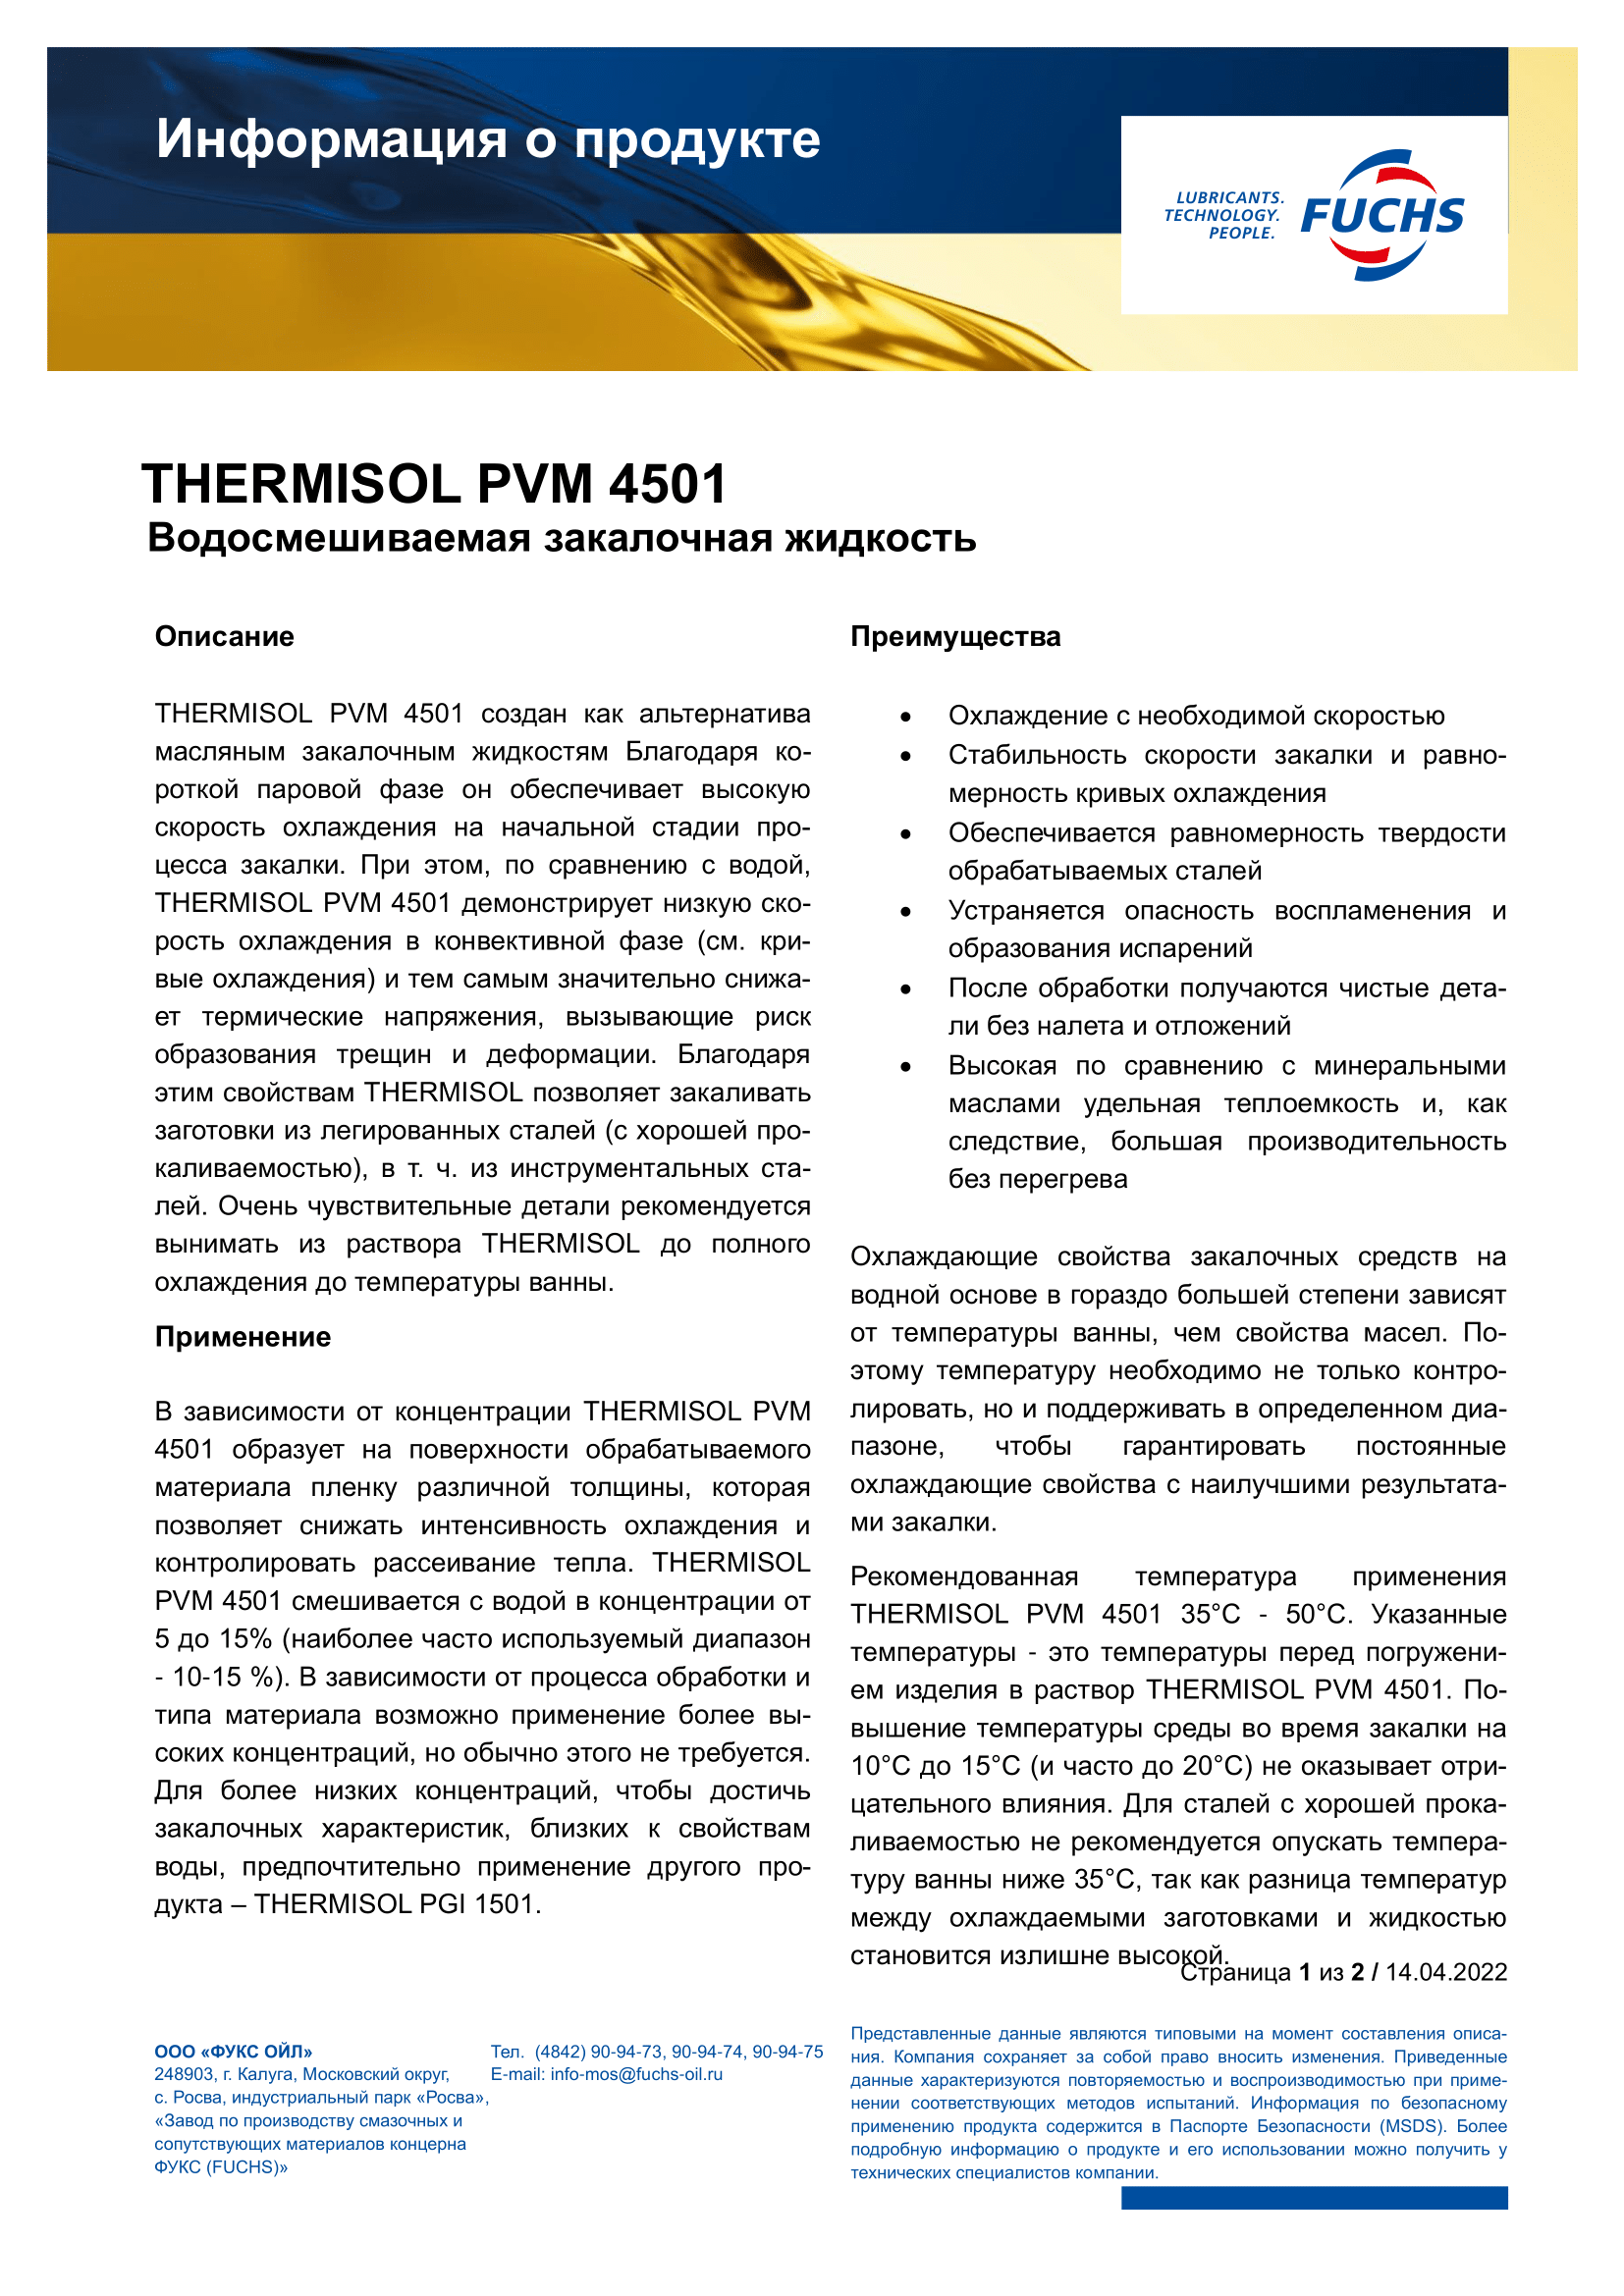 THERMISOL PGI 1501